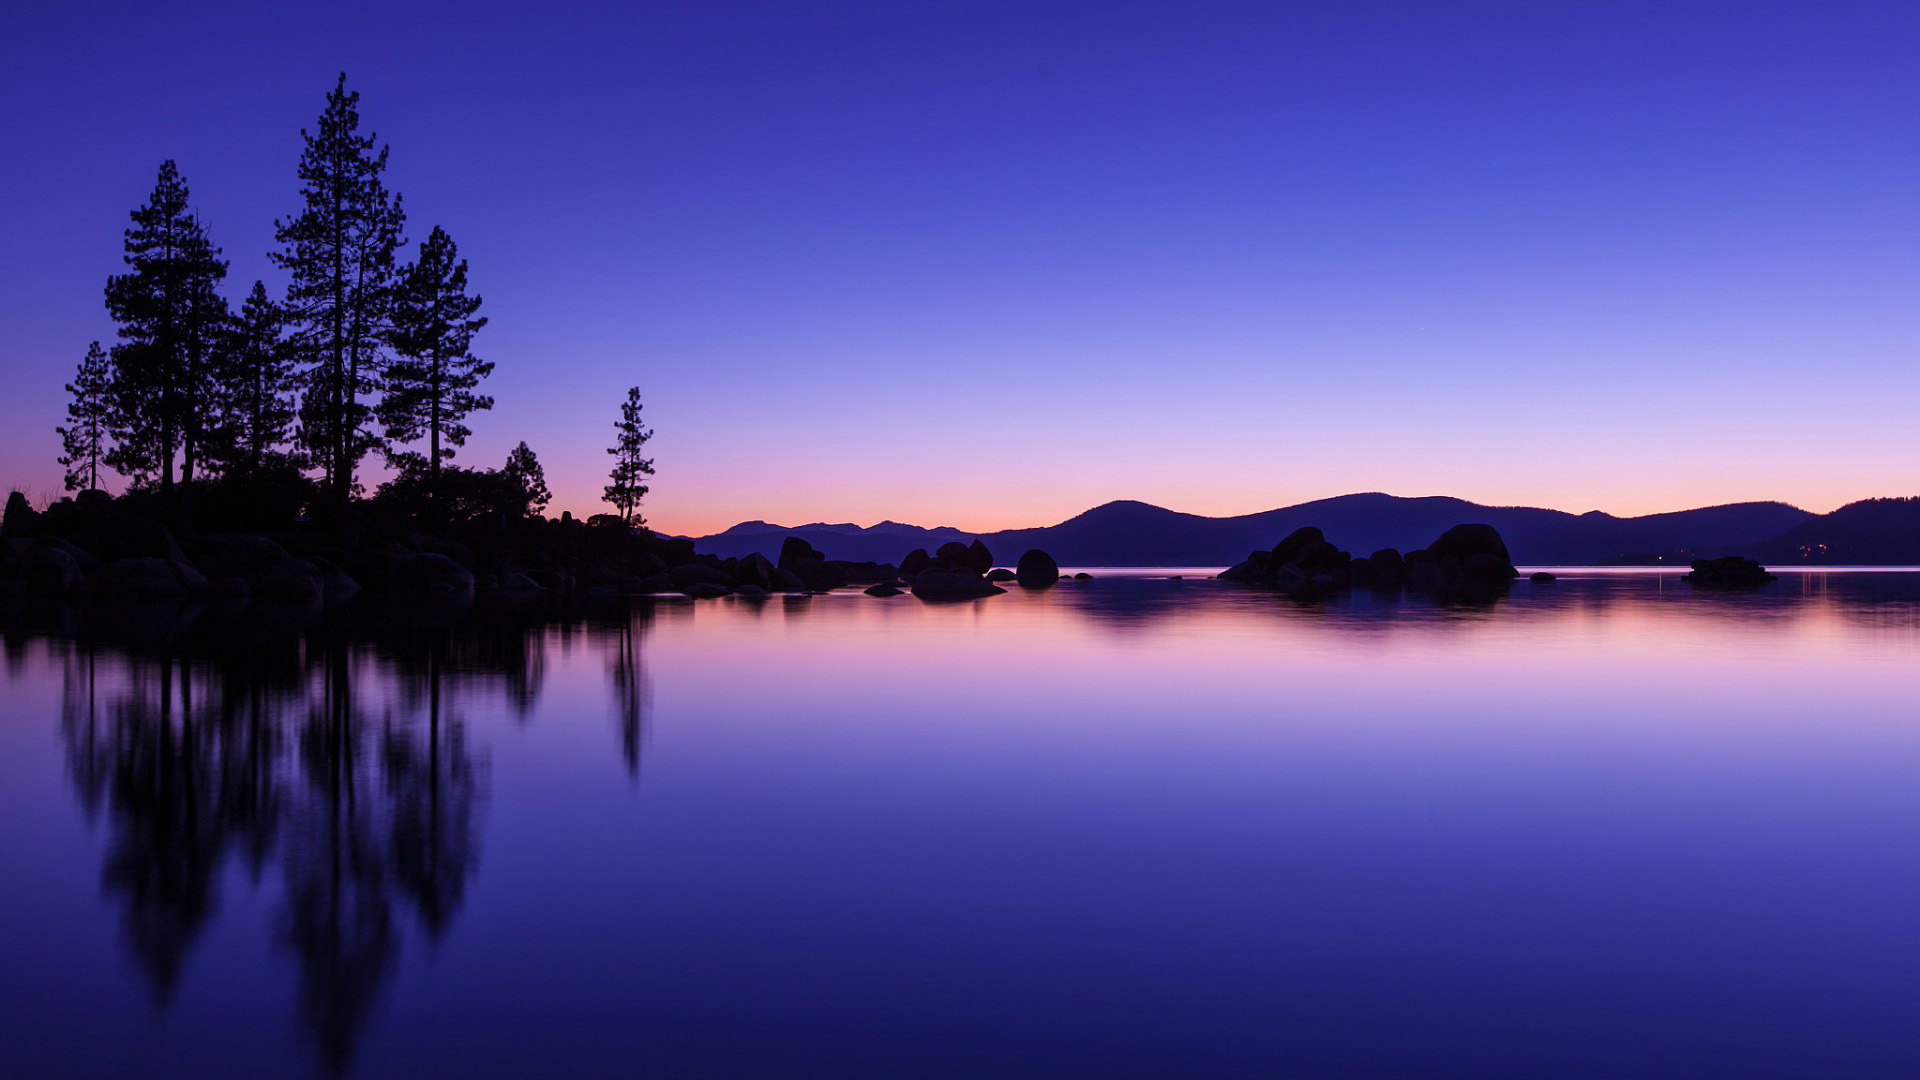 蓝色湖泊,水,树,倒影,宽屏自然风景桌面壁纸